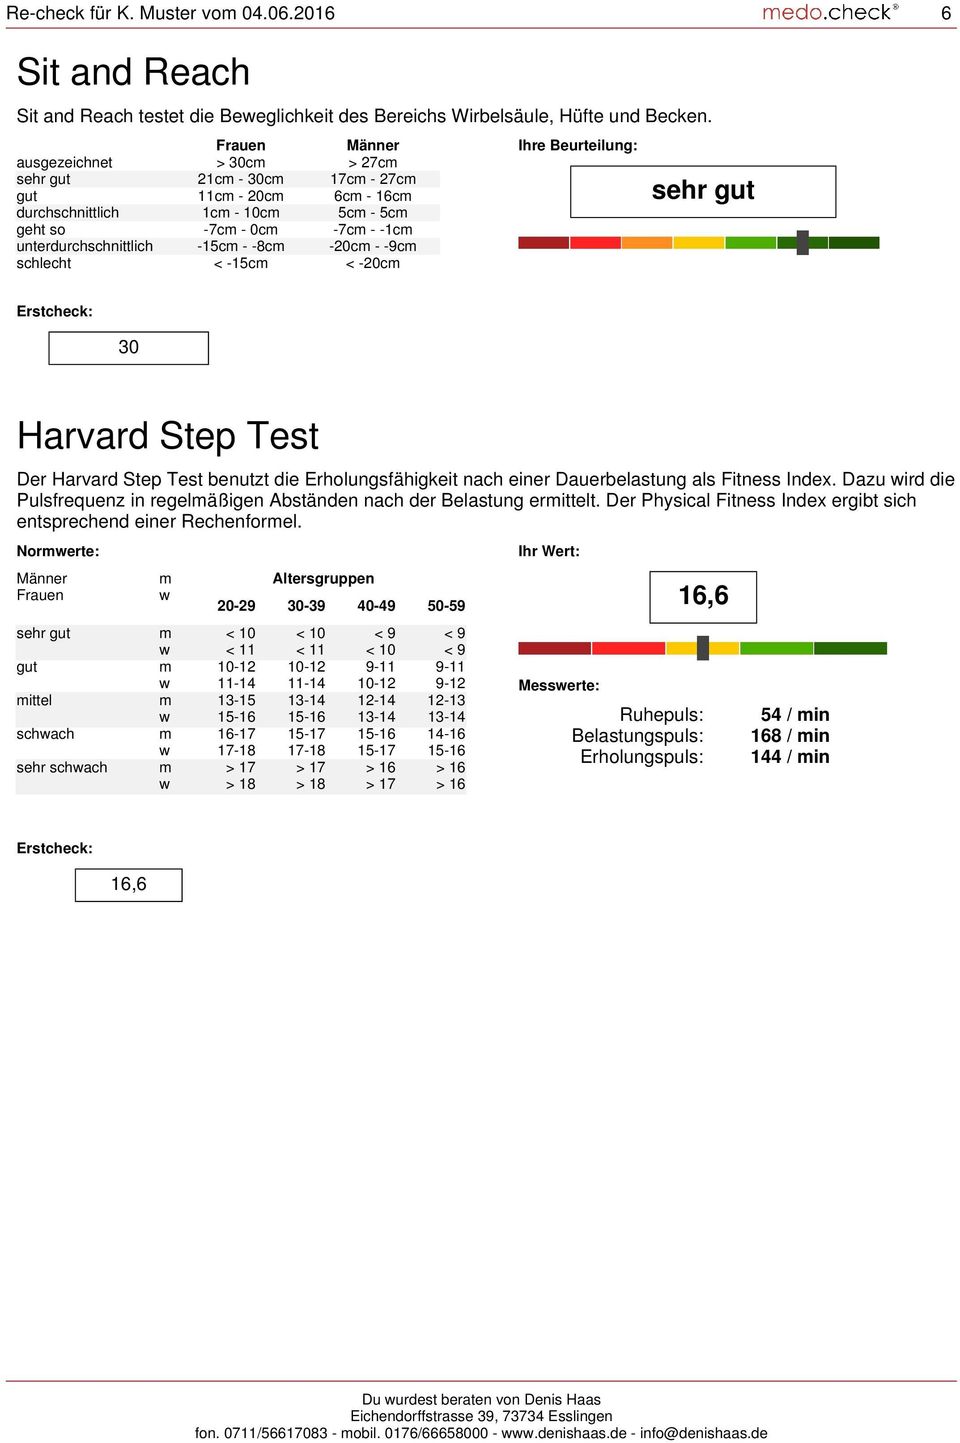 -8cm -20cm - -9cm schlecht < -15cm < -20cm Ihre Beurteilung: sehr gut 0 Harvard Step Test Der Harvard Step Test benutzt die Erholungsfähigkeit nach einer Dauerbelastung als Fitness Index.